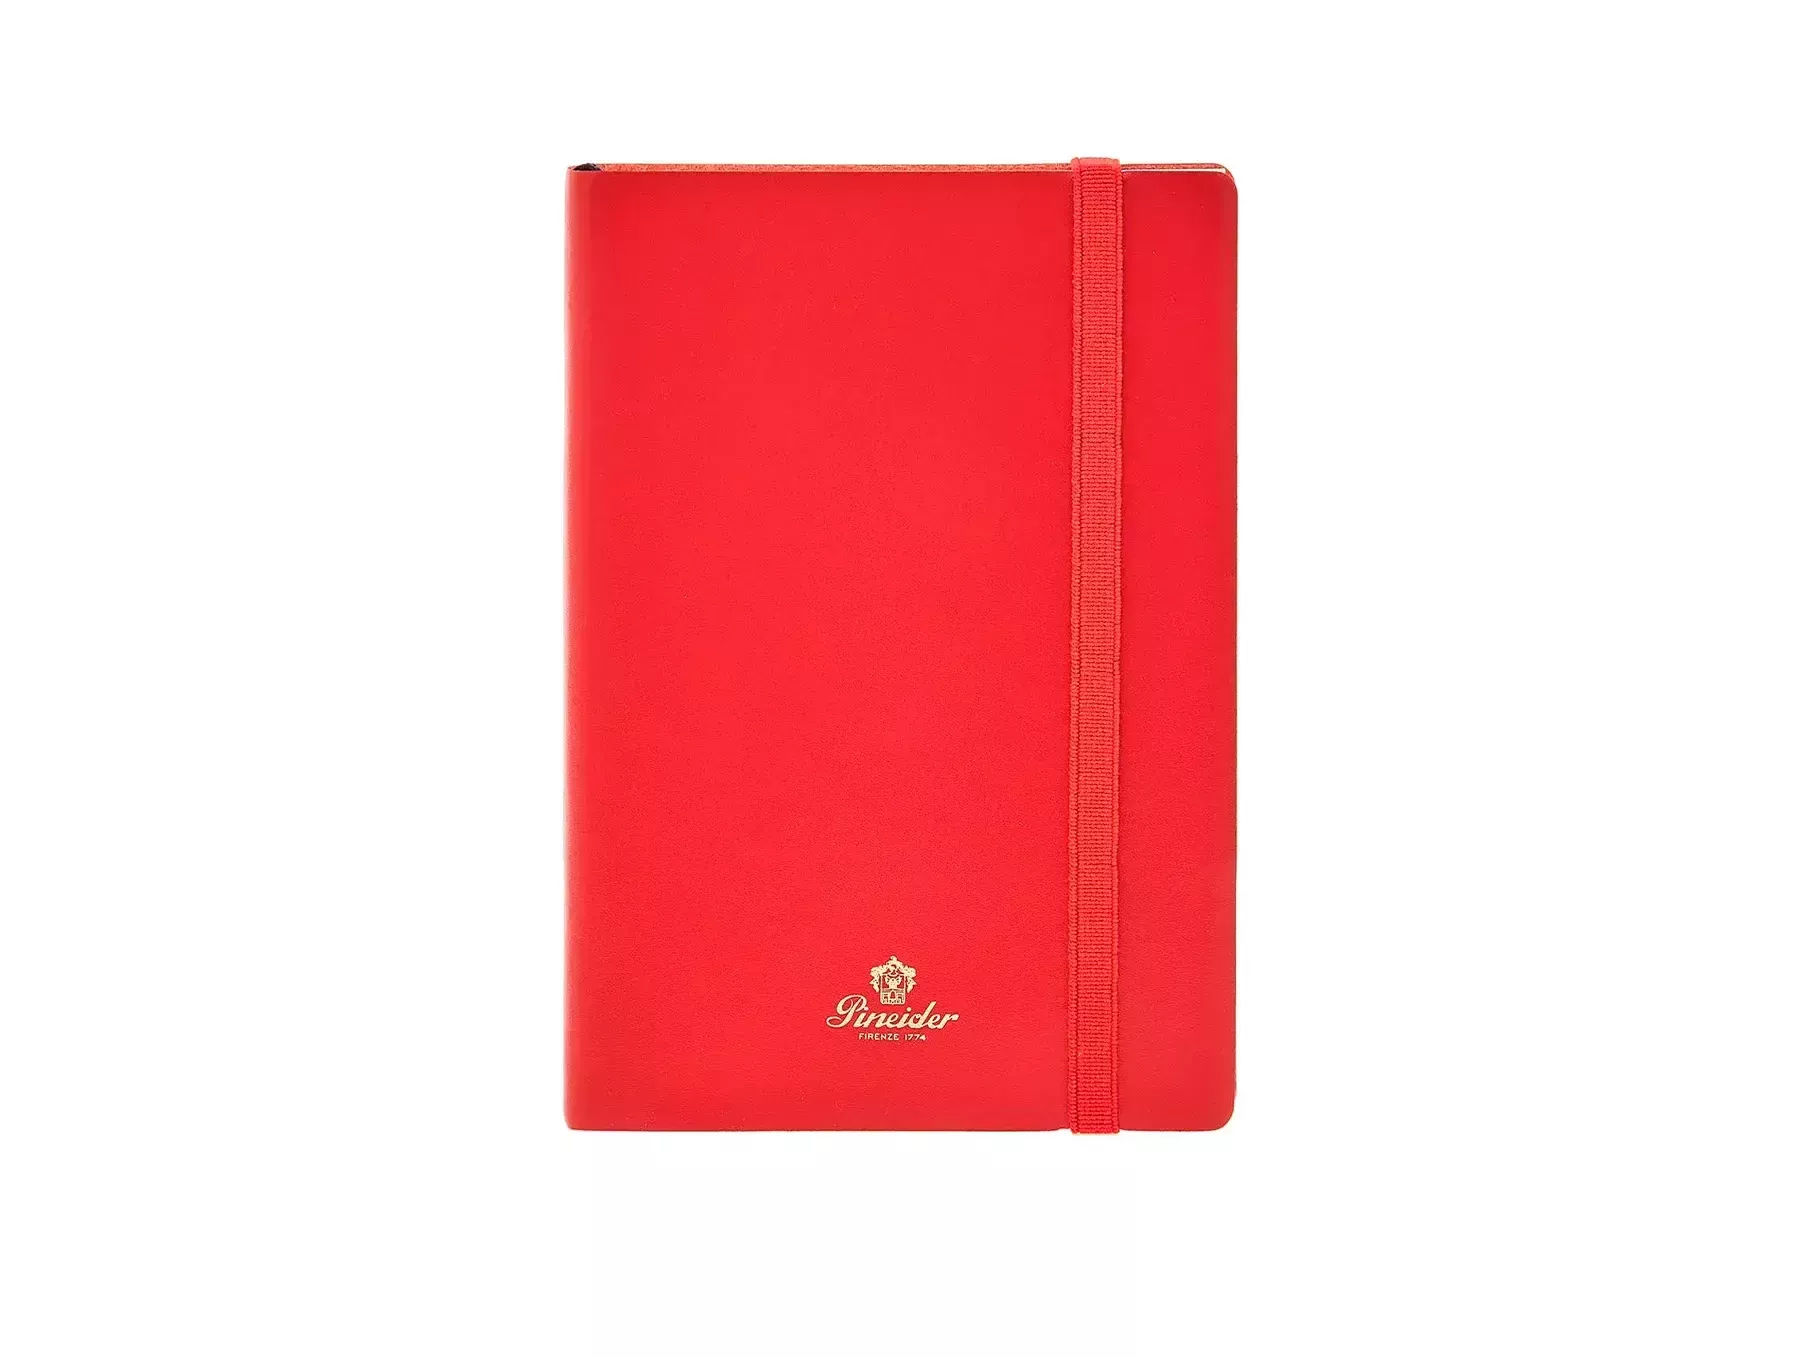 Notebook A4 a quadri da 5 mm: Taccuino A4, quadri 5mm senza margine, design  floreale (Italian Edition)